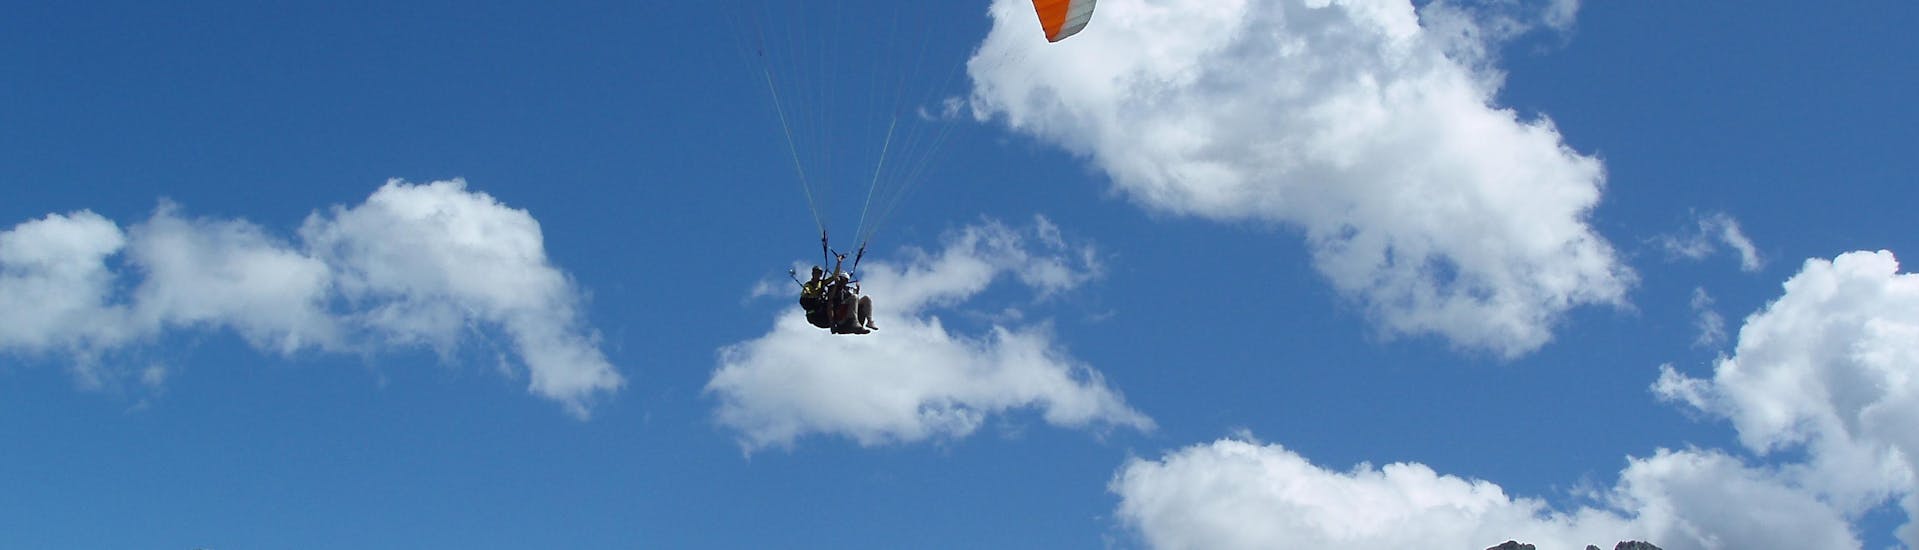 Vol en parapente panoramique à Saltusio-Saltaus (dès 5 ans) - Punta Cervina - Hirzer.